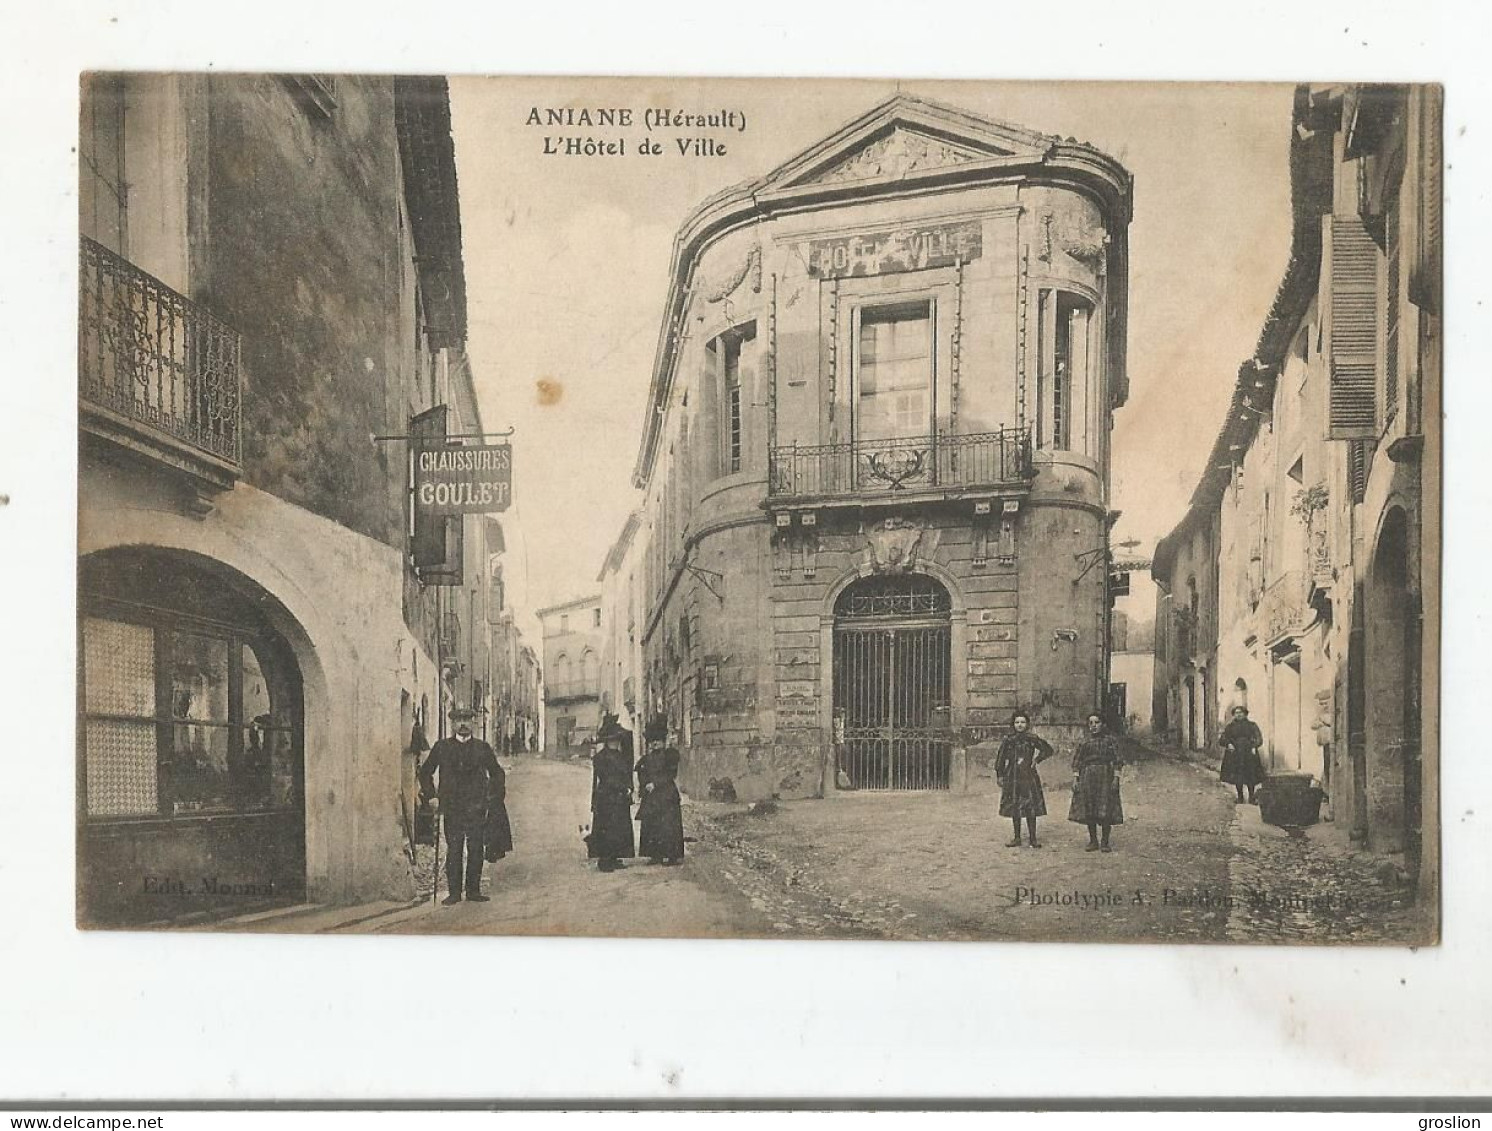 ANIANE (HERAULT) L'HOTEL DE VILLE (MAGASIN DE CHAUSSURES GOULET ET BELLE ANIMATION) 1914 - Aniane